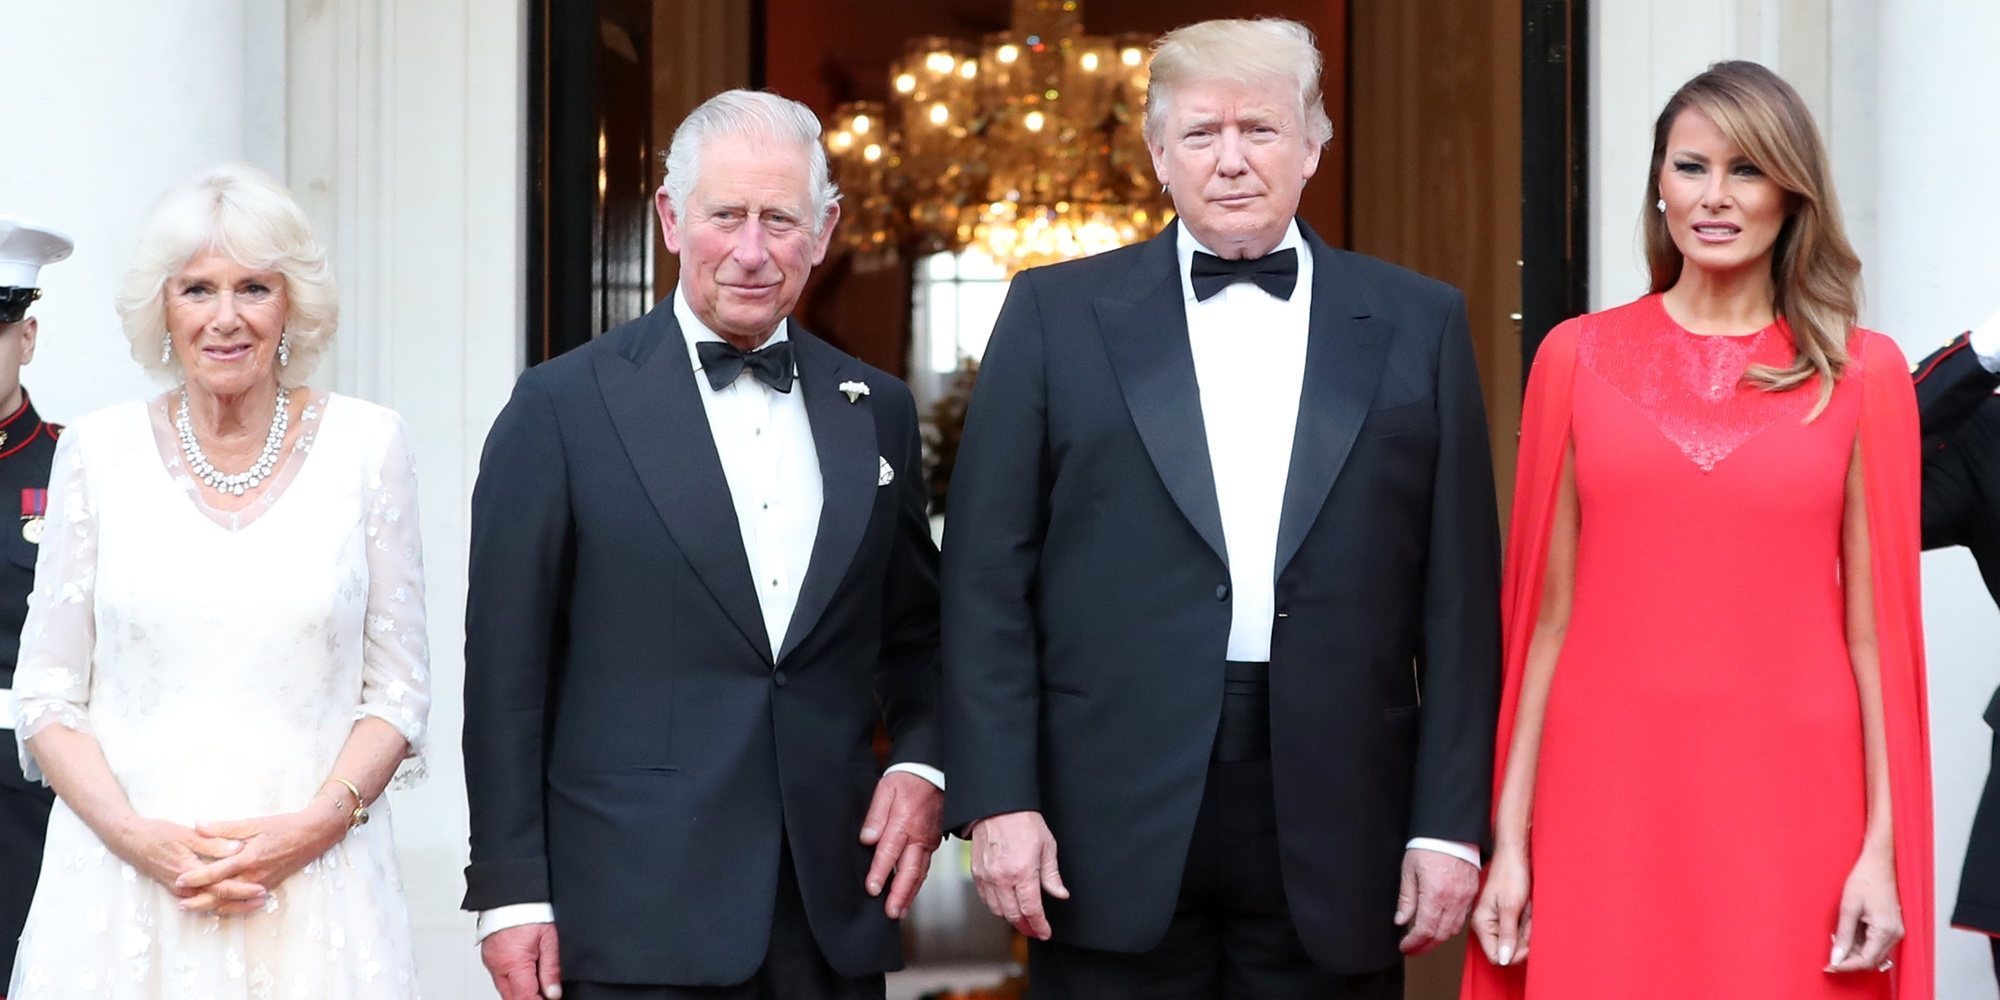 La cena al estilo americano que Donald y Melania Trump ofrecieron al Príncipe Carlos y Camilla Parker